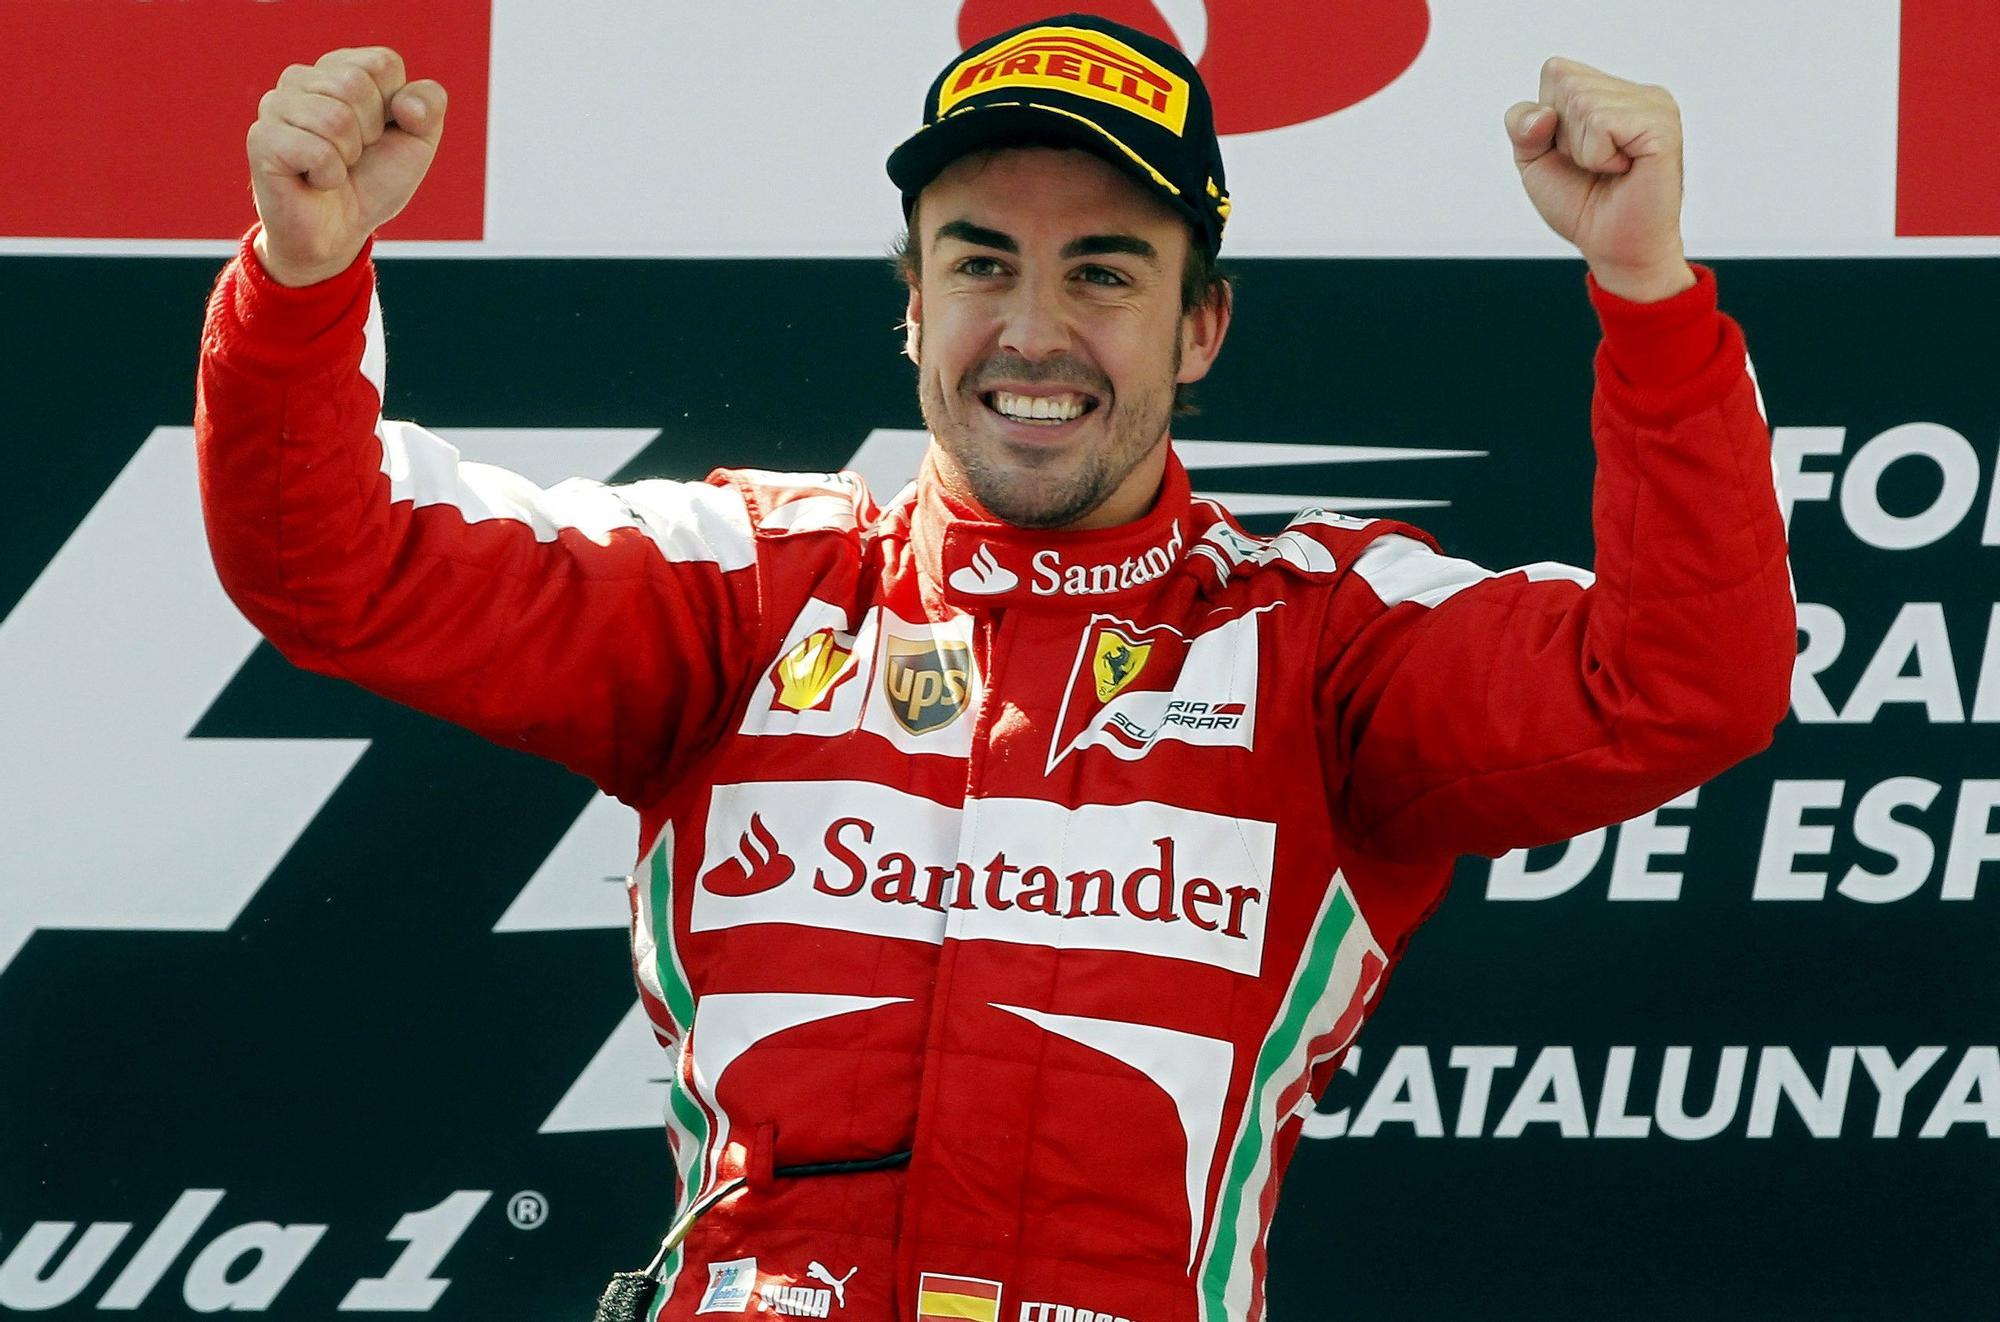 El vídeo de Ferrari a Fernando Alonso por su 33 cumpleaños